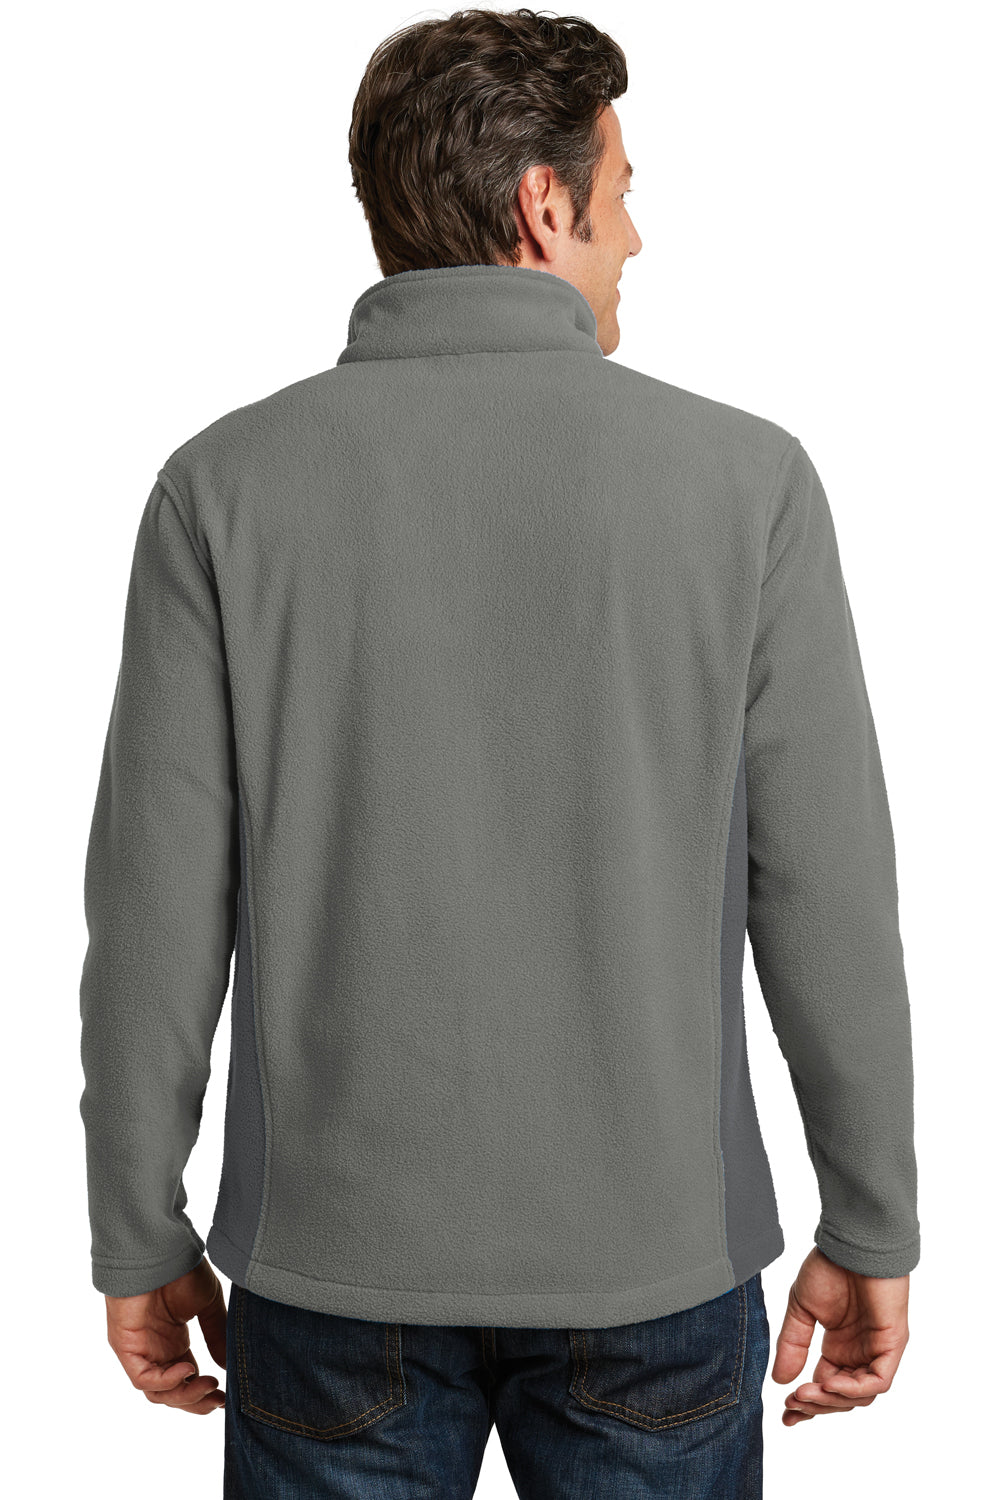 Port Authority F216 Mens Full Zip Fleece Jacket Smoke Grey/Grey Back